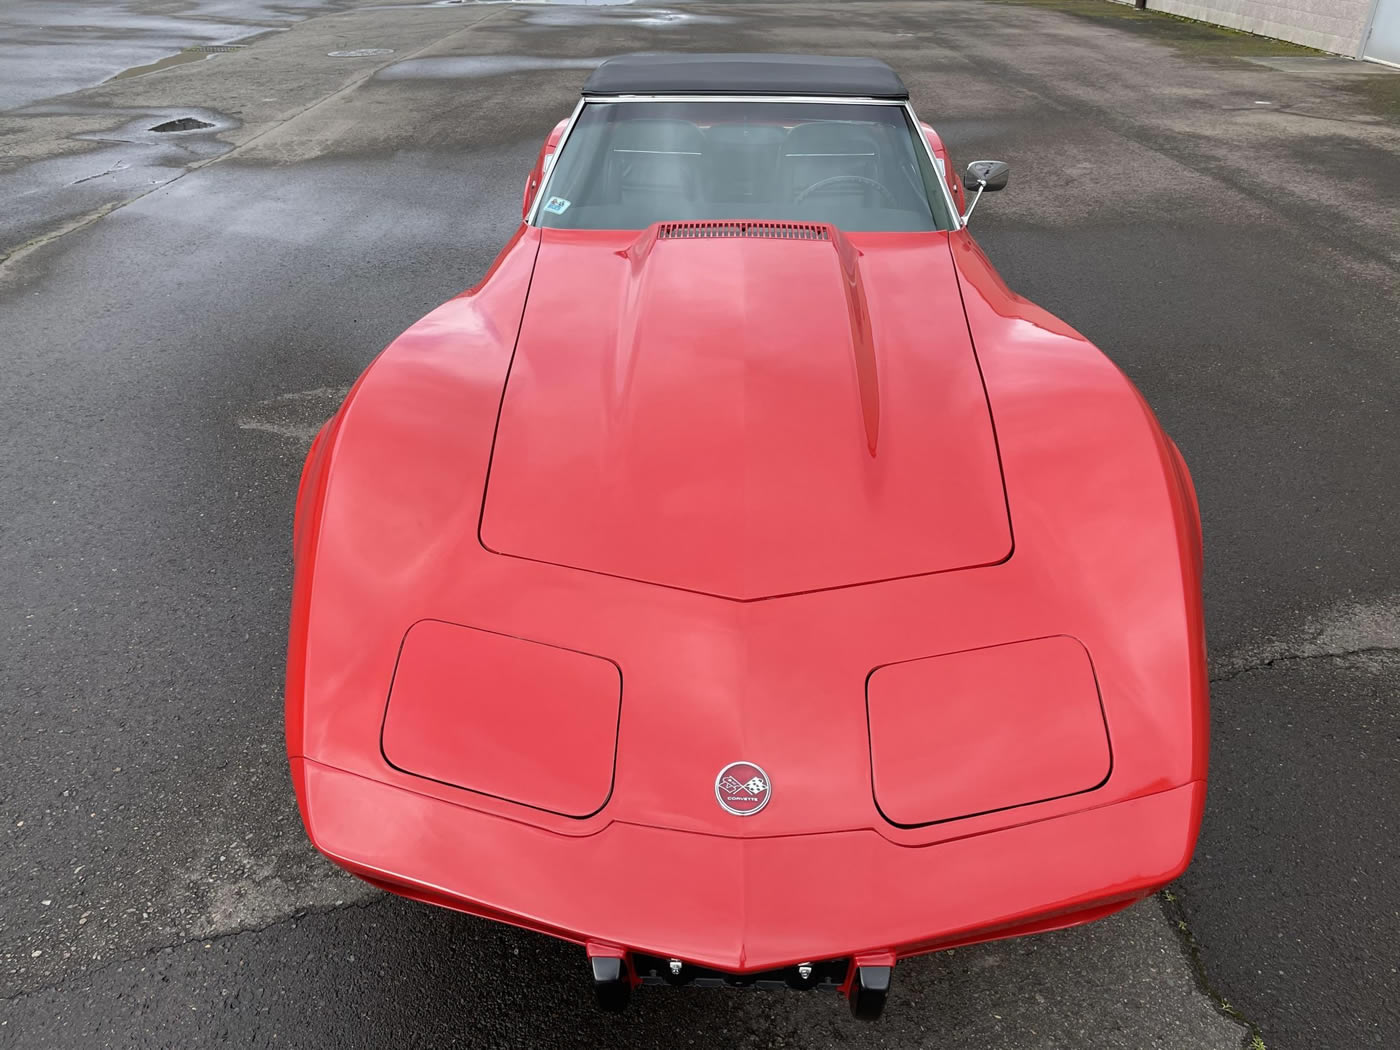 1975 Corvette Convertible in Mille Miglia Red